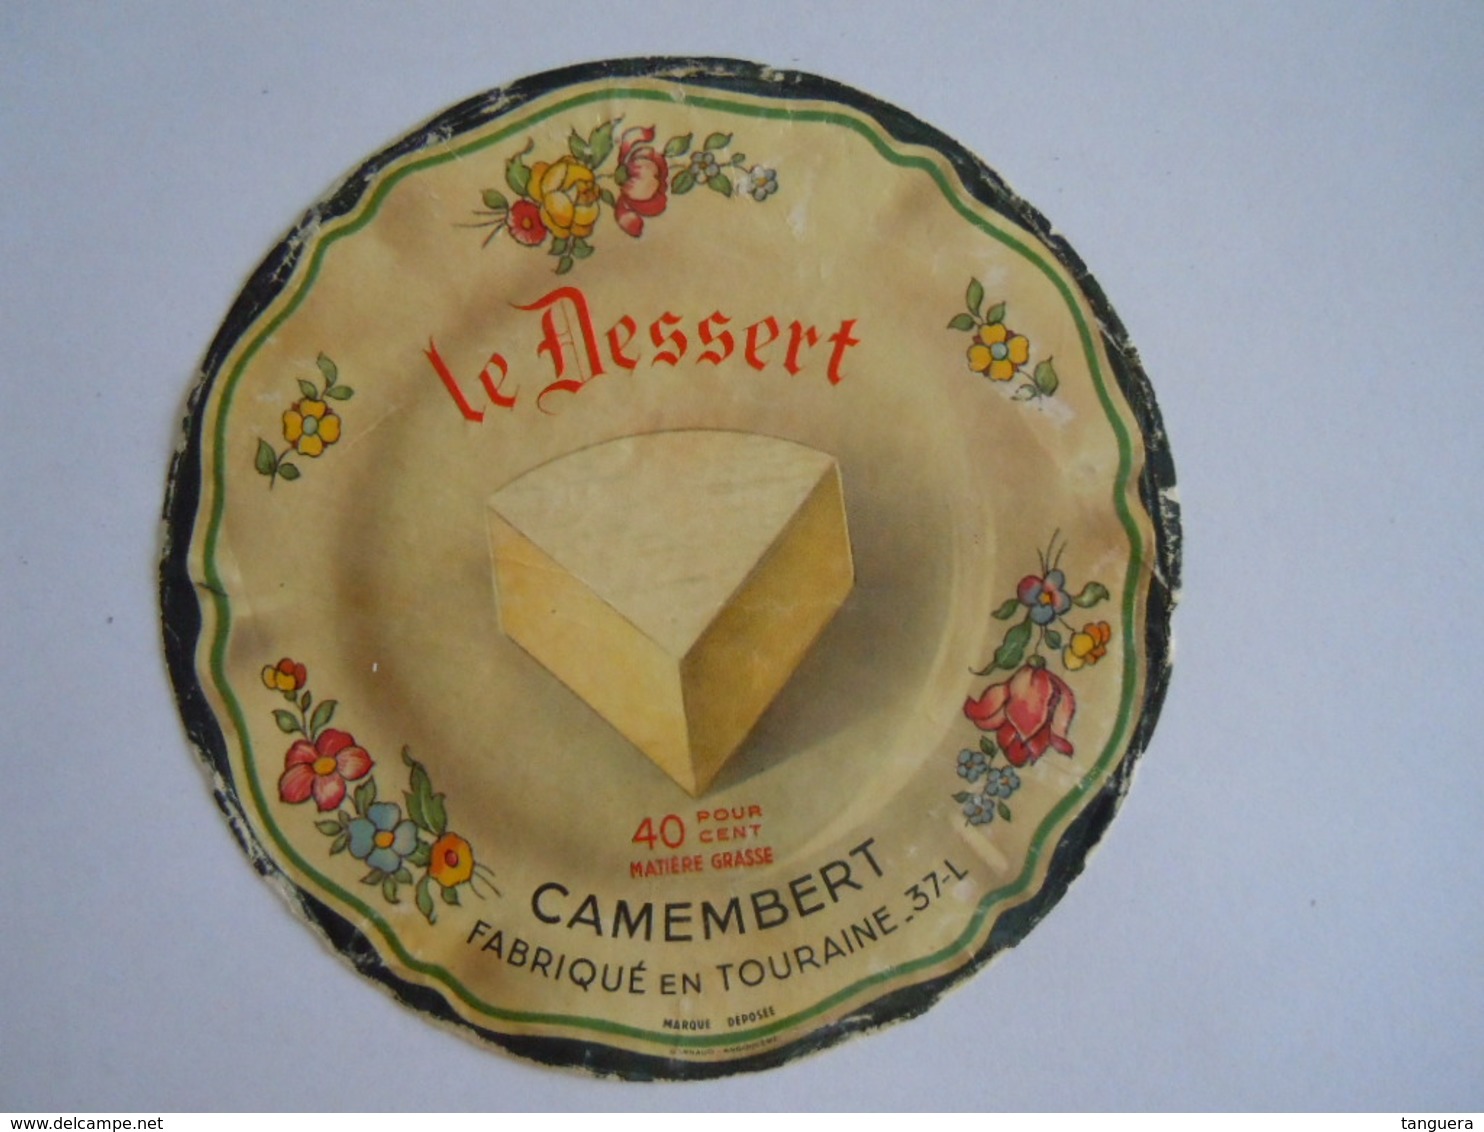 Etiket Etiquette Camembert Fabriqué En Touraine 37-L Le Dessert - Quesos